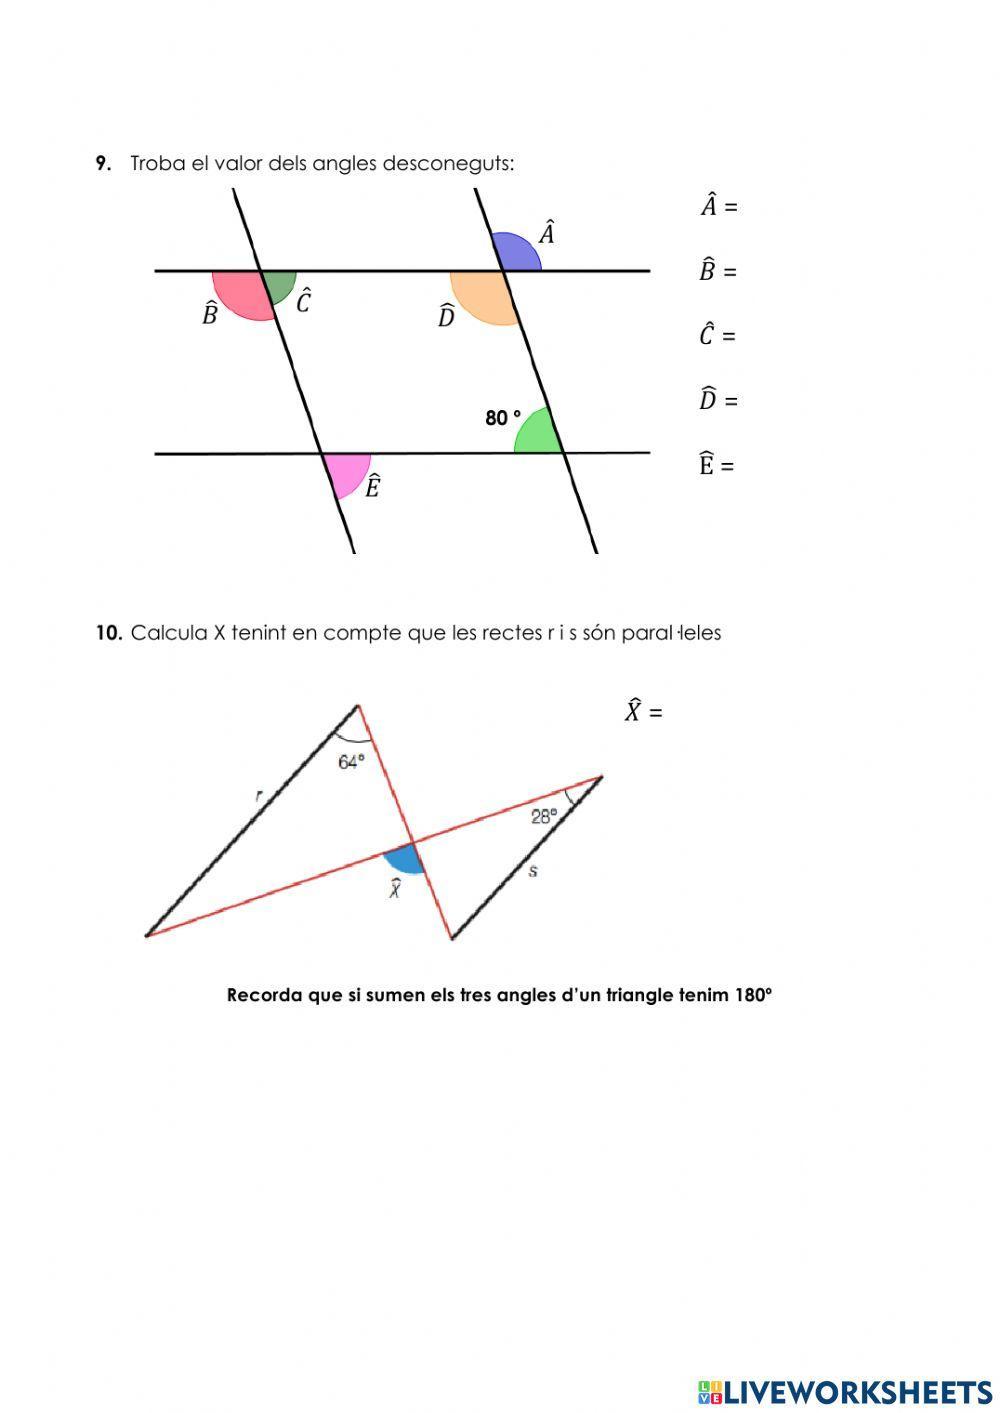 Angles complementaris i suplementaris II